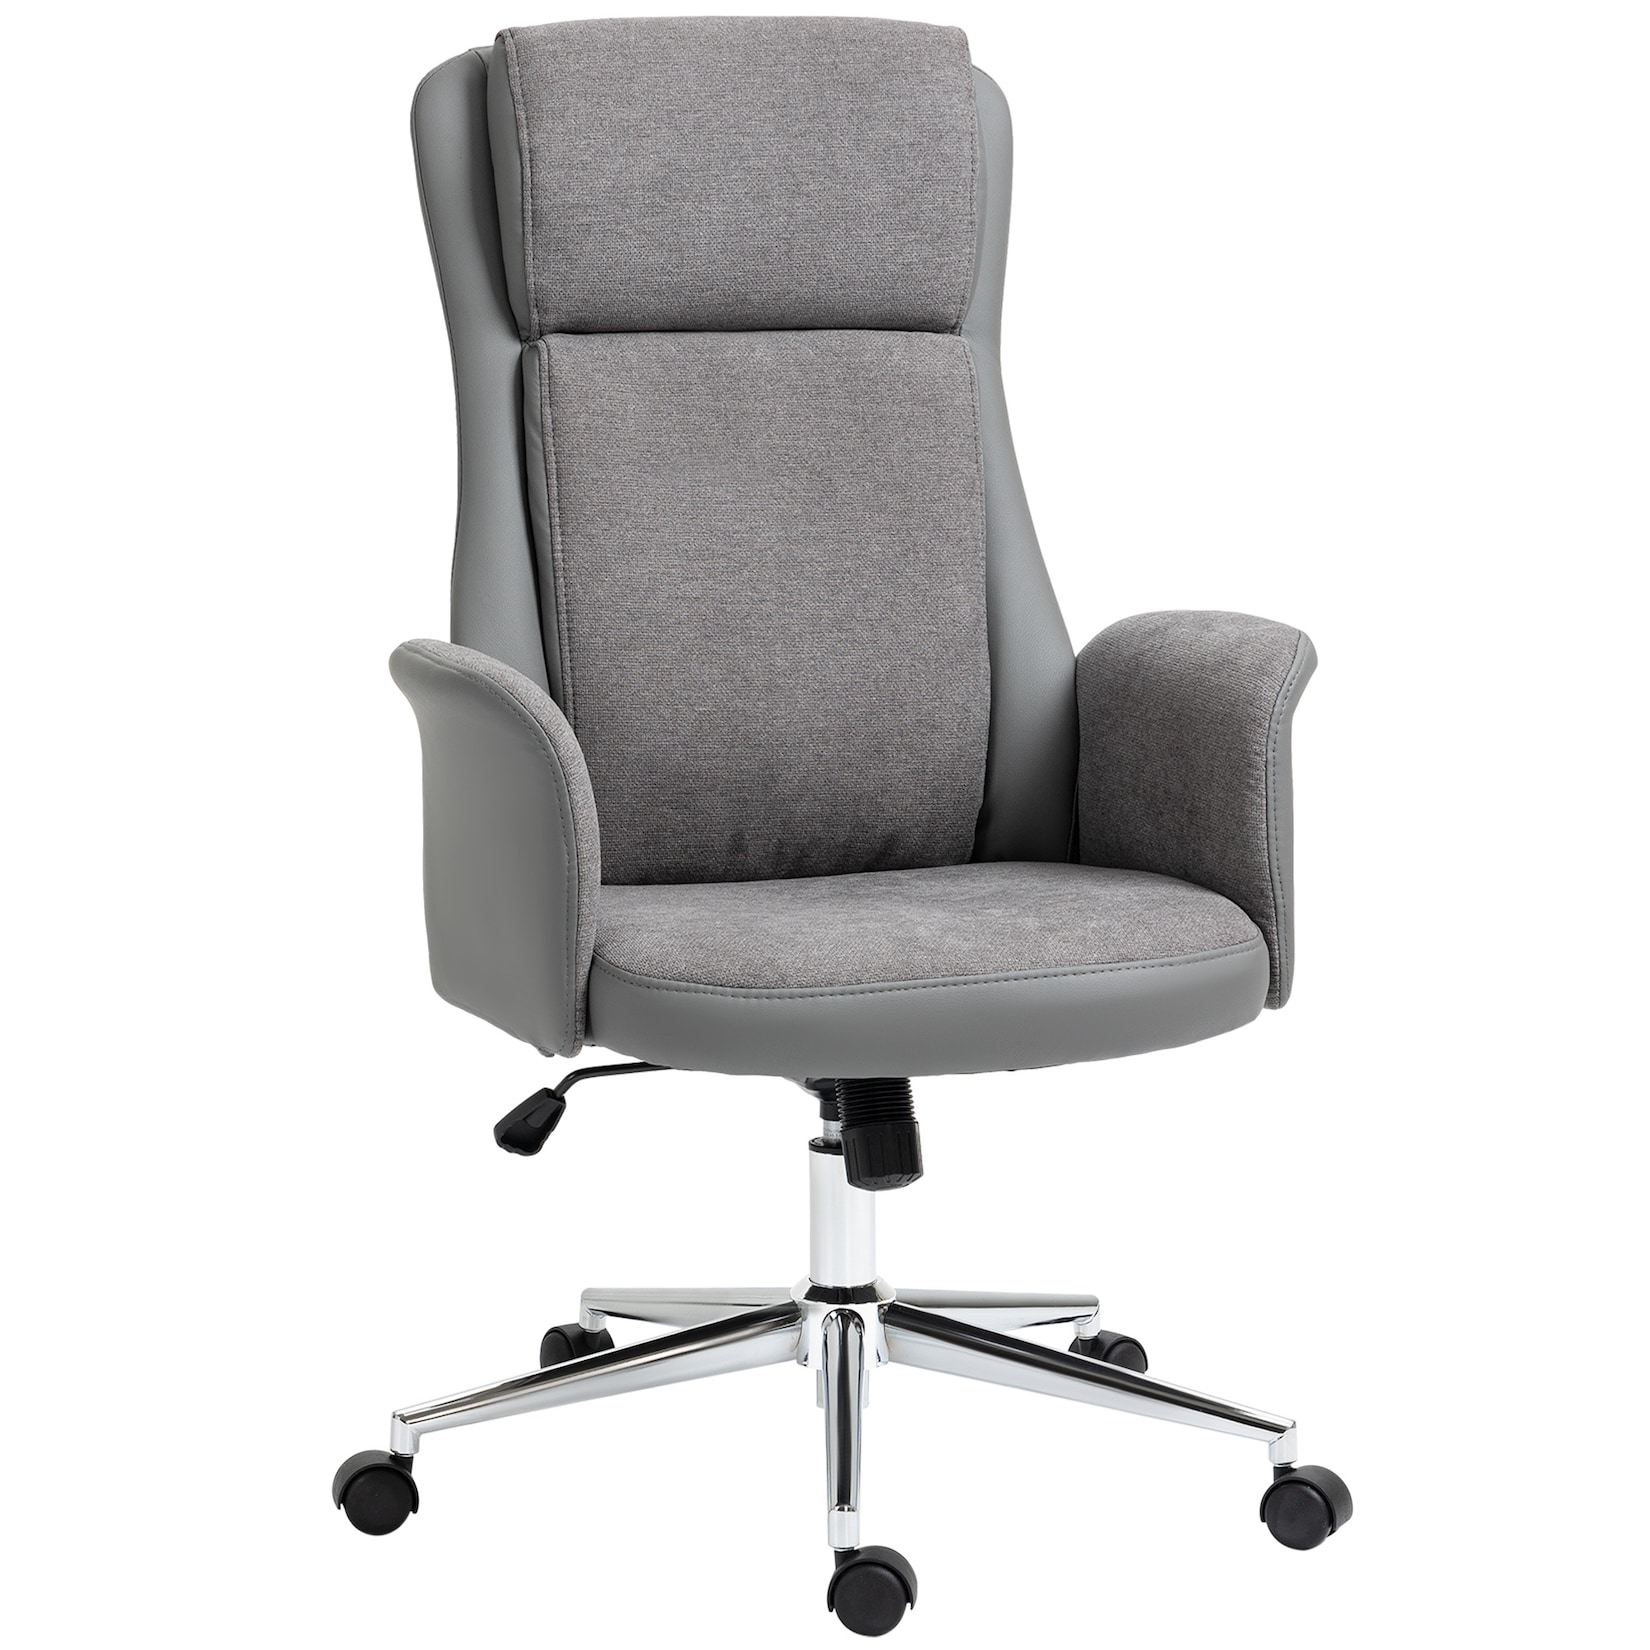 Vinsetto bureaustoel met tuimelfunctie, 360° draaistoel, kan tot 120 kg dragen, grijs